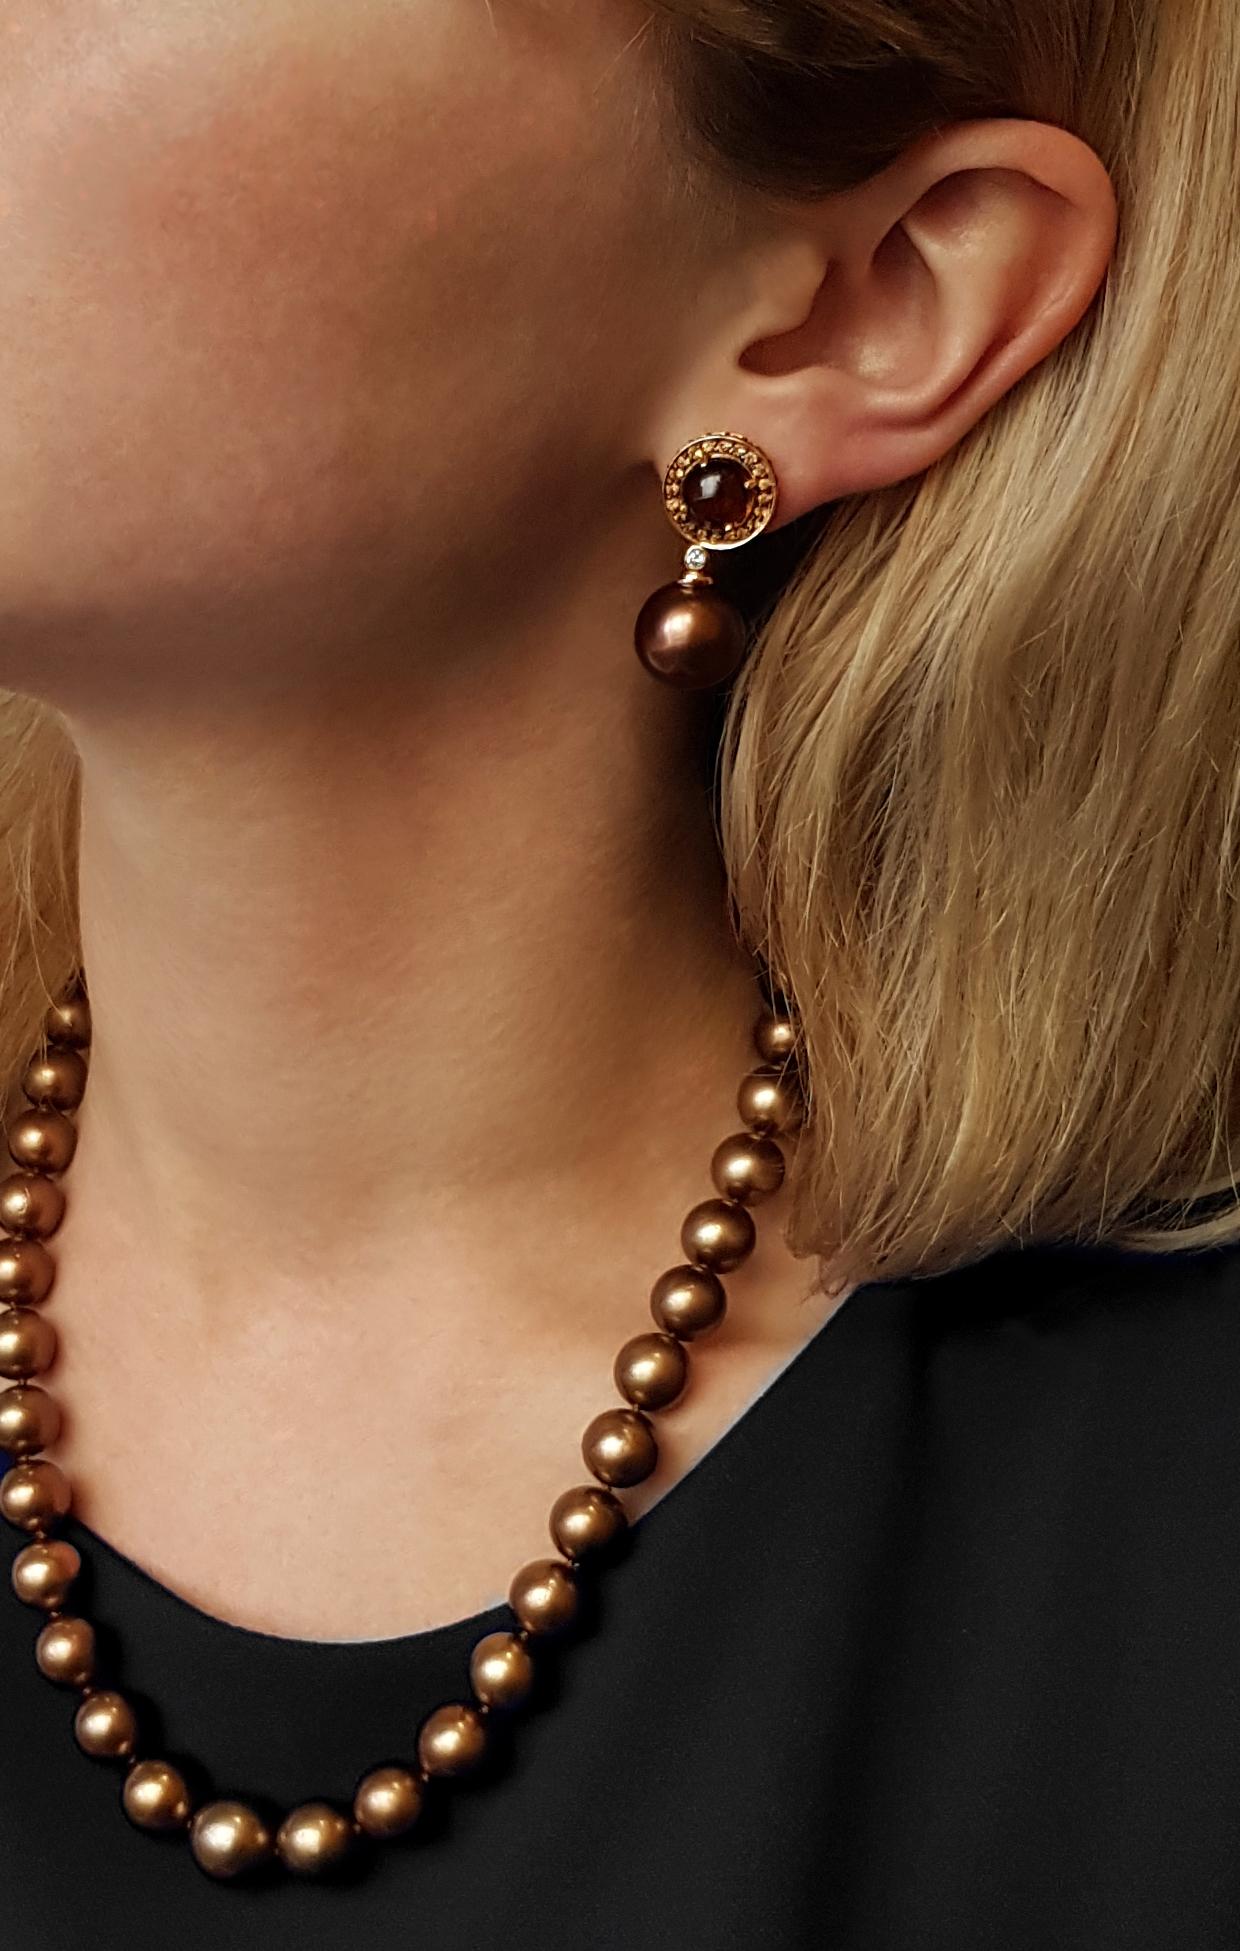 Diese ungewöhnlichen Ohrringe von Yoko London bestechen durch eine prächtige Kombination aus schokoladenfarbenen Tahiti-Perlen, Cognac-Quarz und gelben Saphiren. Um diese satten Farbtöne noch zu verstärken, sind die Ohrringe in 18 Karat Gelbgold